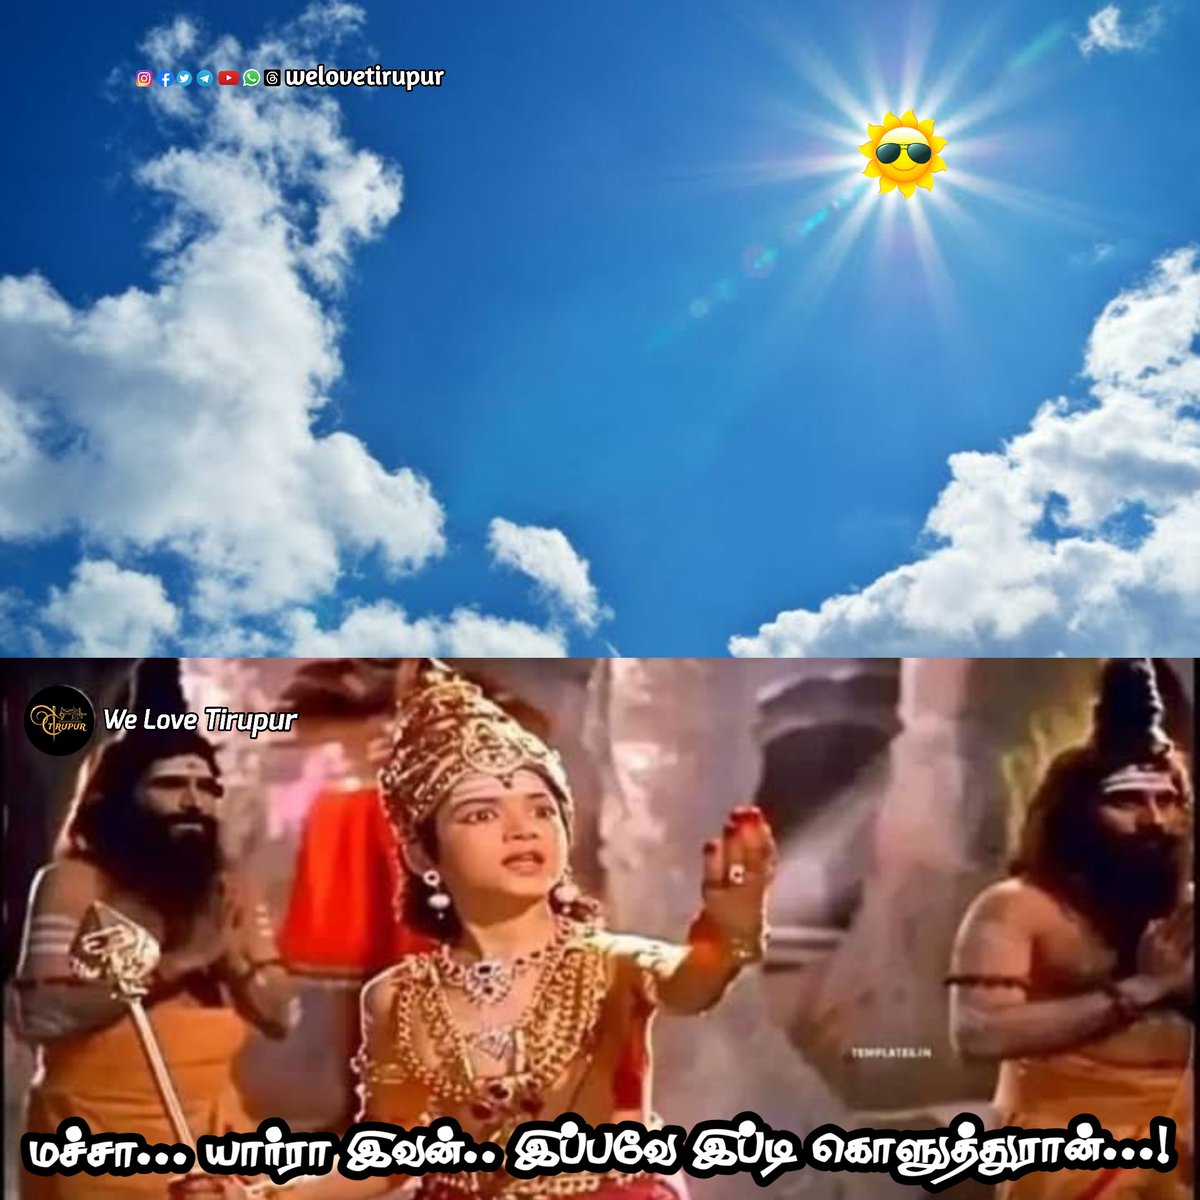 இன்னும் 2 மாசம் இருக்குடா சூரியா.. 🙄 🤦‍♂️
. 
#welovetirupur
.
Follow us
👉 IG : FB :TW : YT : @welovetirupur
.
#Tiruppur #sun #heat #temperature #tirupur #tamilnadu #india #coimbatore #chennai #madurai #erode #dharapuram #avinashi #Kangeyam #palladam  #news #memes #Tiruppurmemes